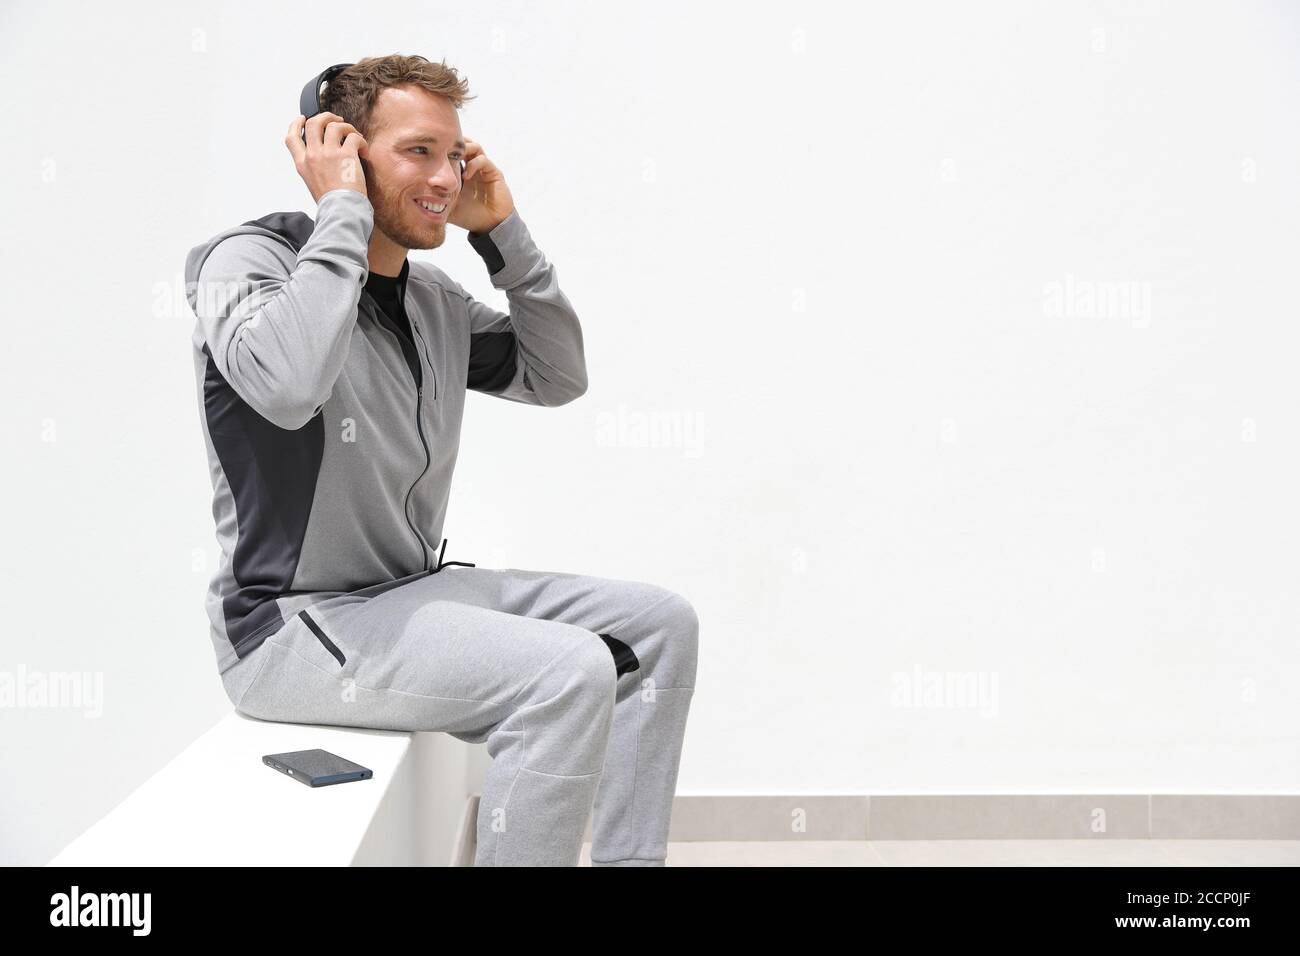 Mann hört Musik Handy-App trägt Kopfhörer sitzen zu Hause. Gesunder Lifestyle-Sportler mit Smartphone auf Jogging Pause im Freien Stockfoto